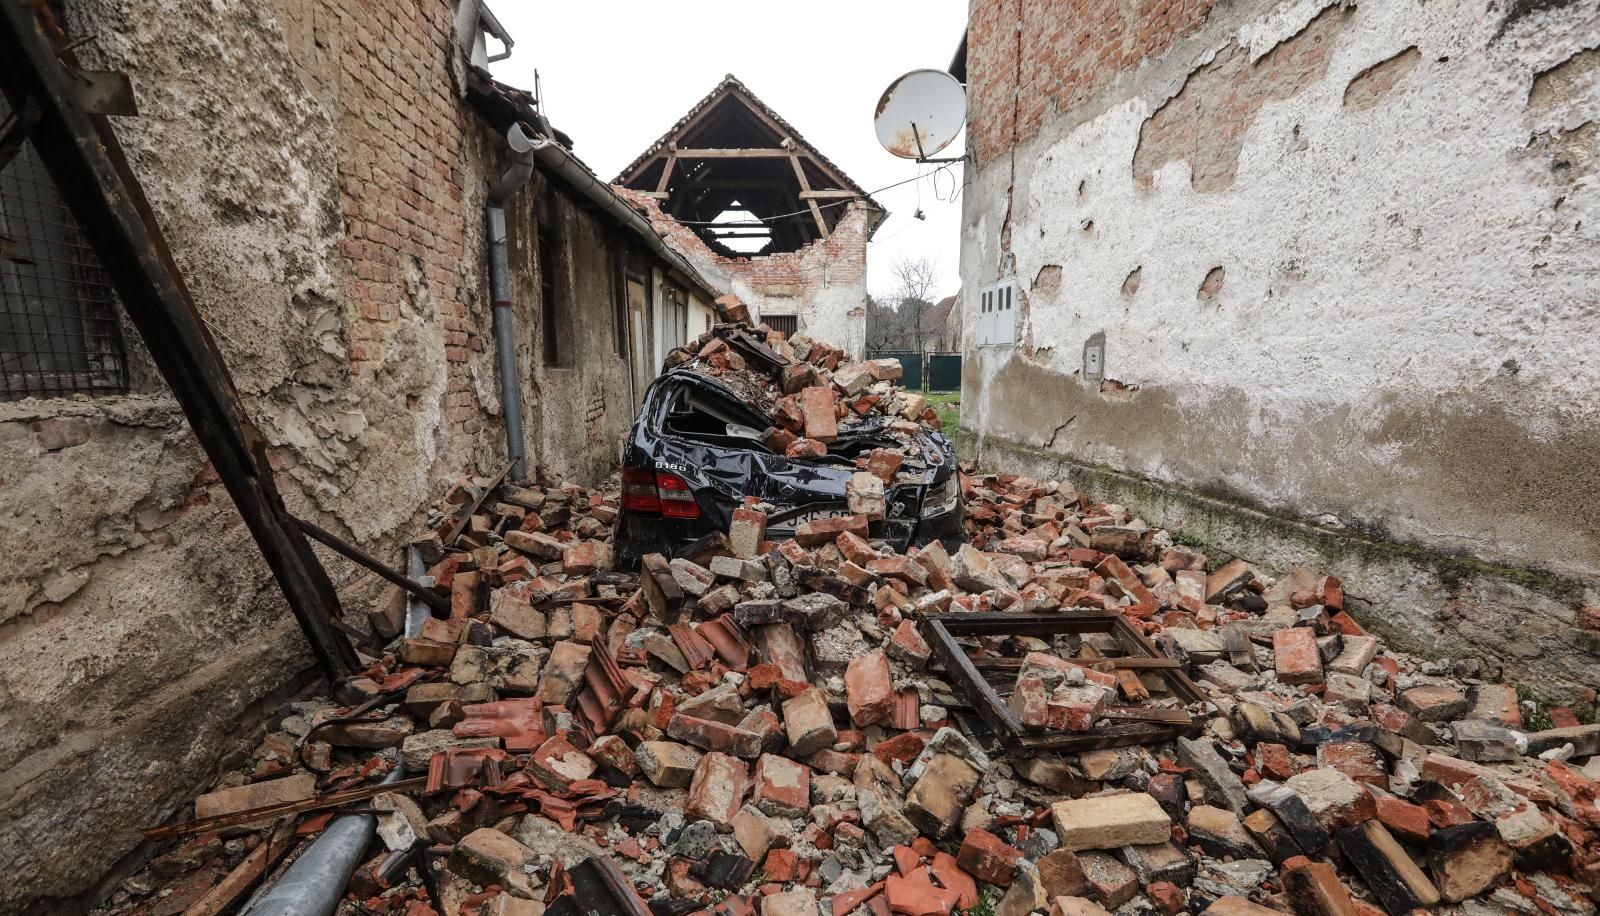 04.01.2021., Petrinja, ciscenje rusevina starog dijela grada nakon katastrofalnog potresa.
Photo: Robert Anic/PIXSELL